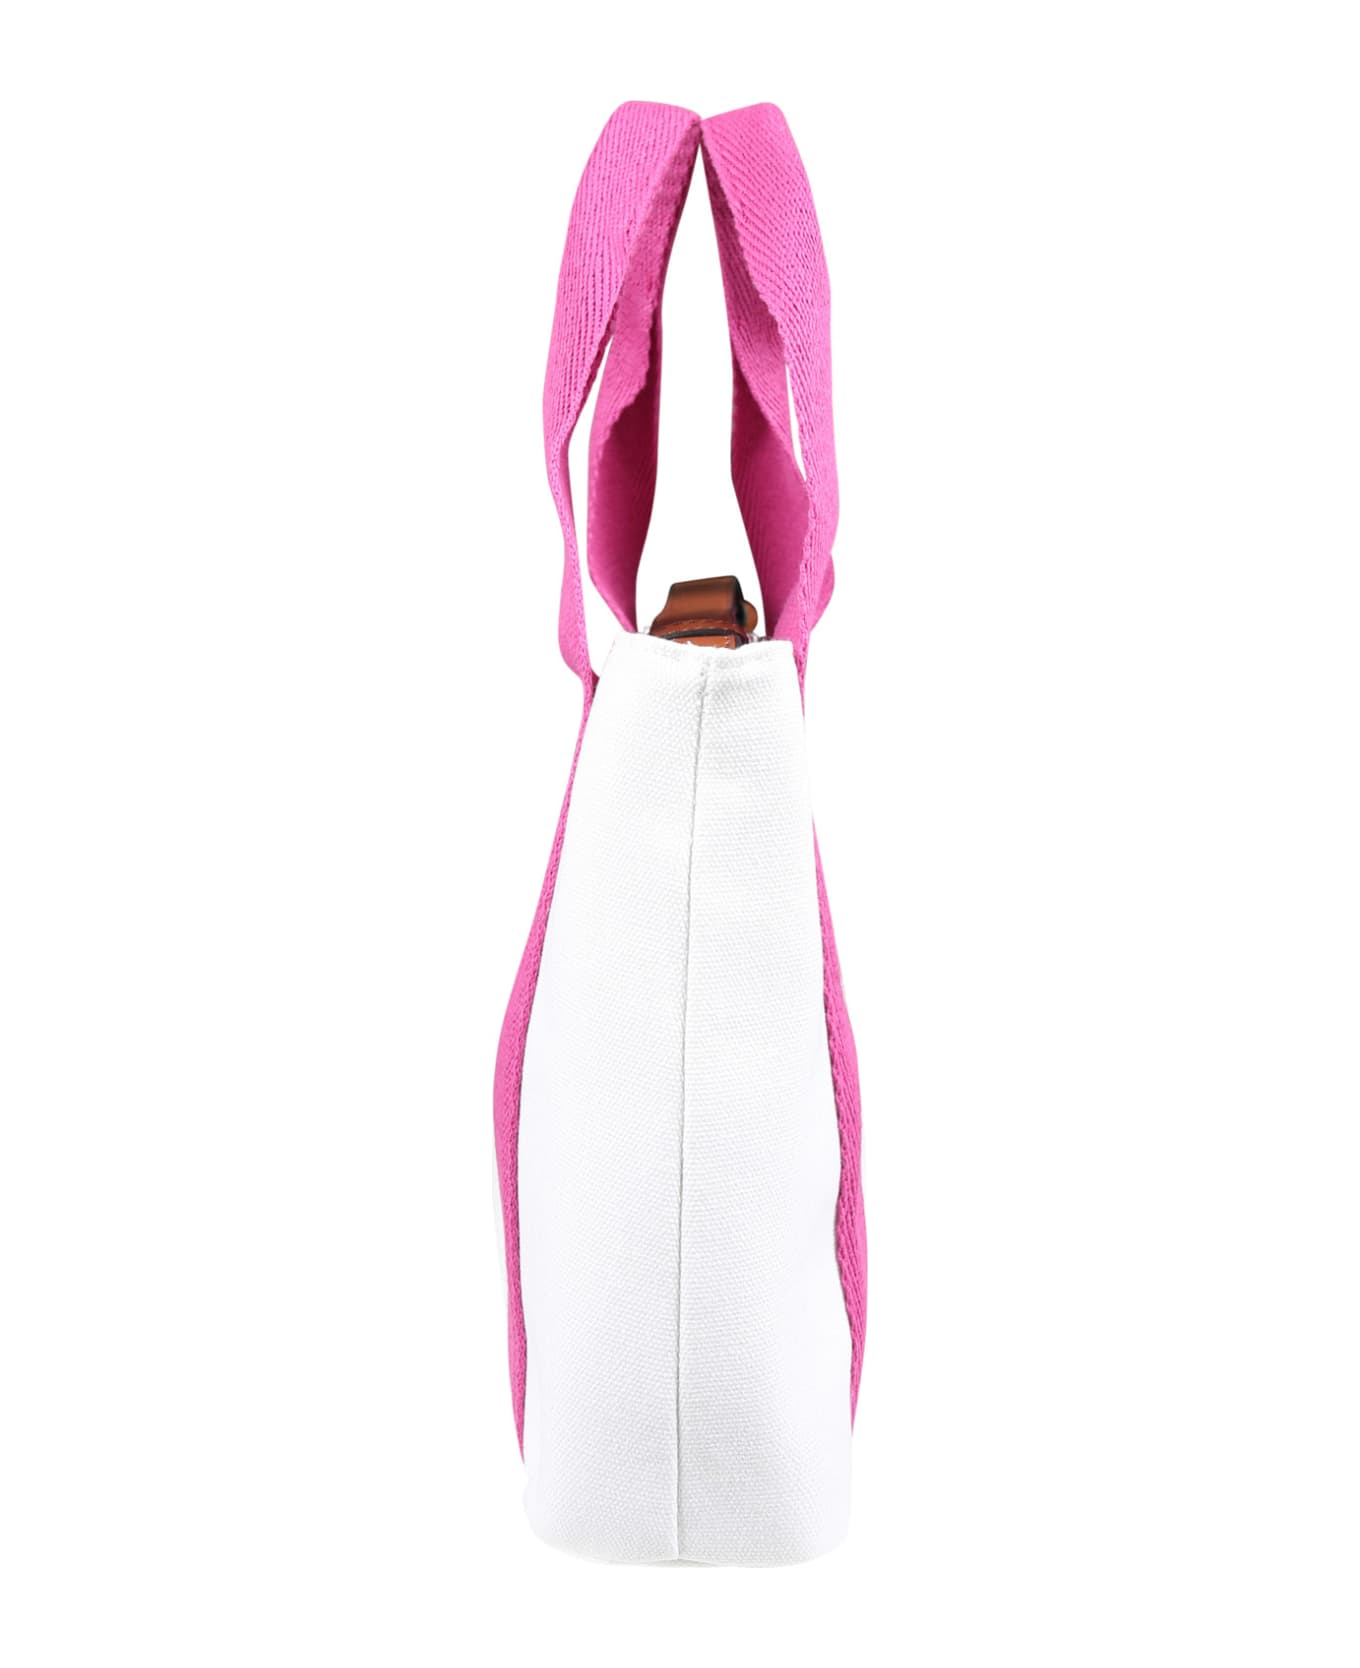 Chloé White Bag For Girl With Logo - White